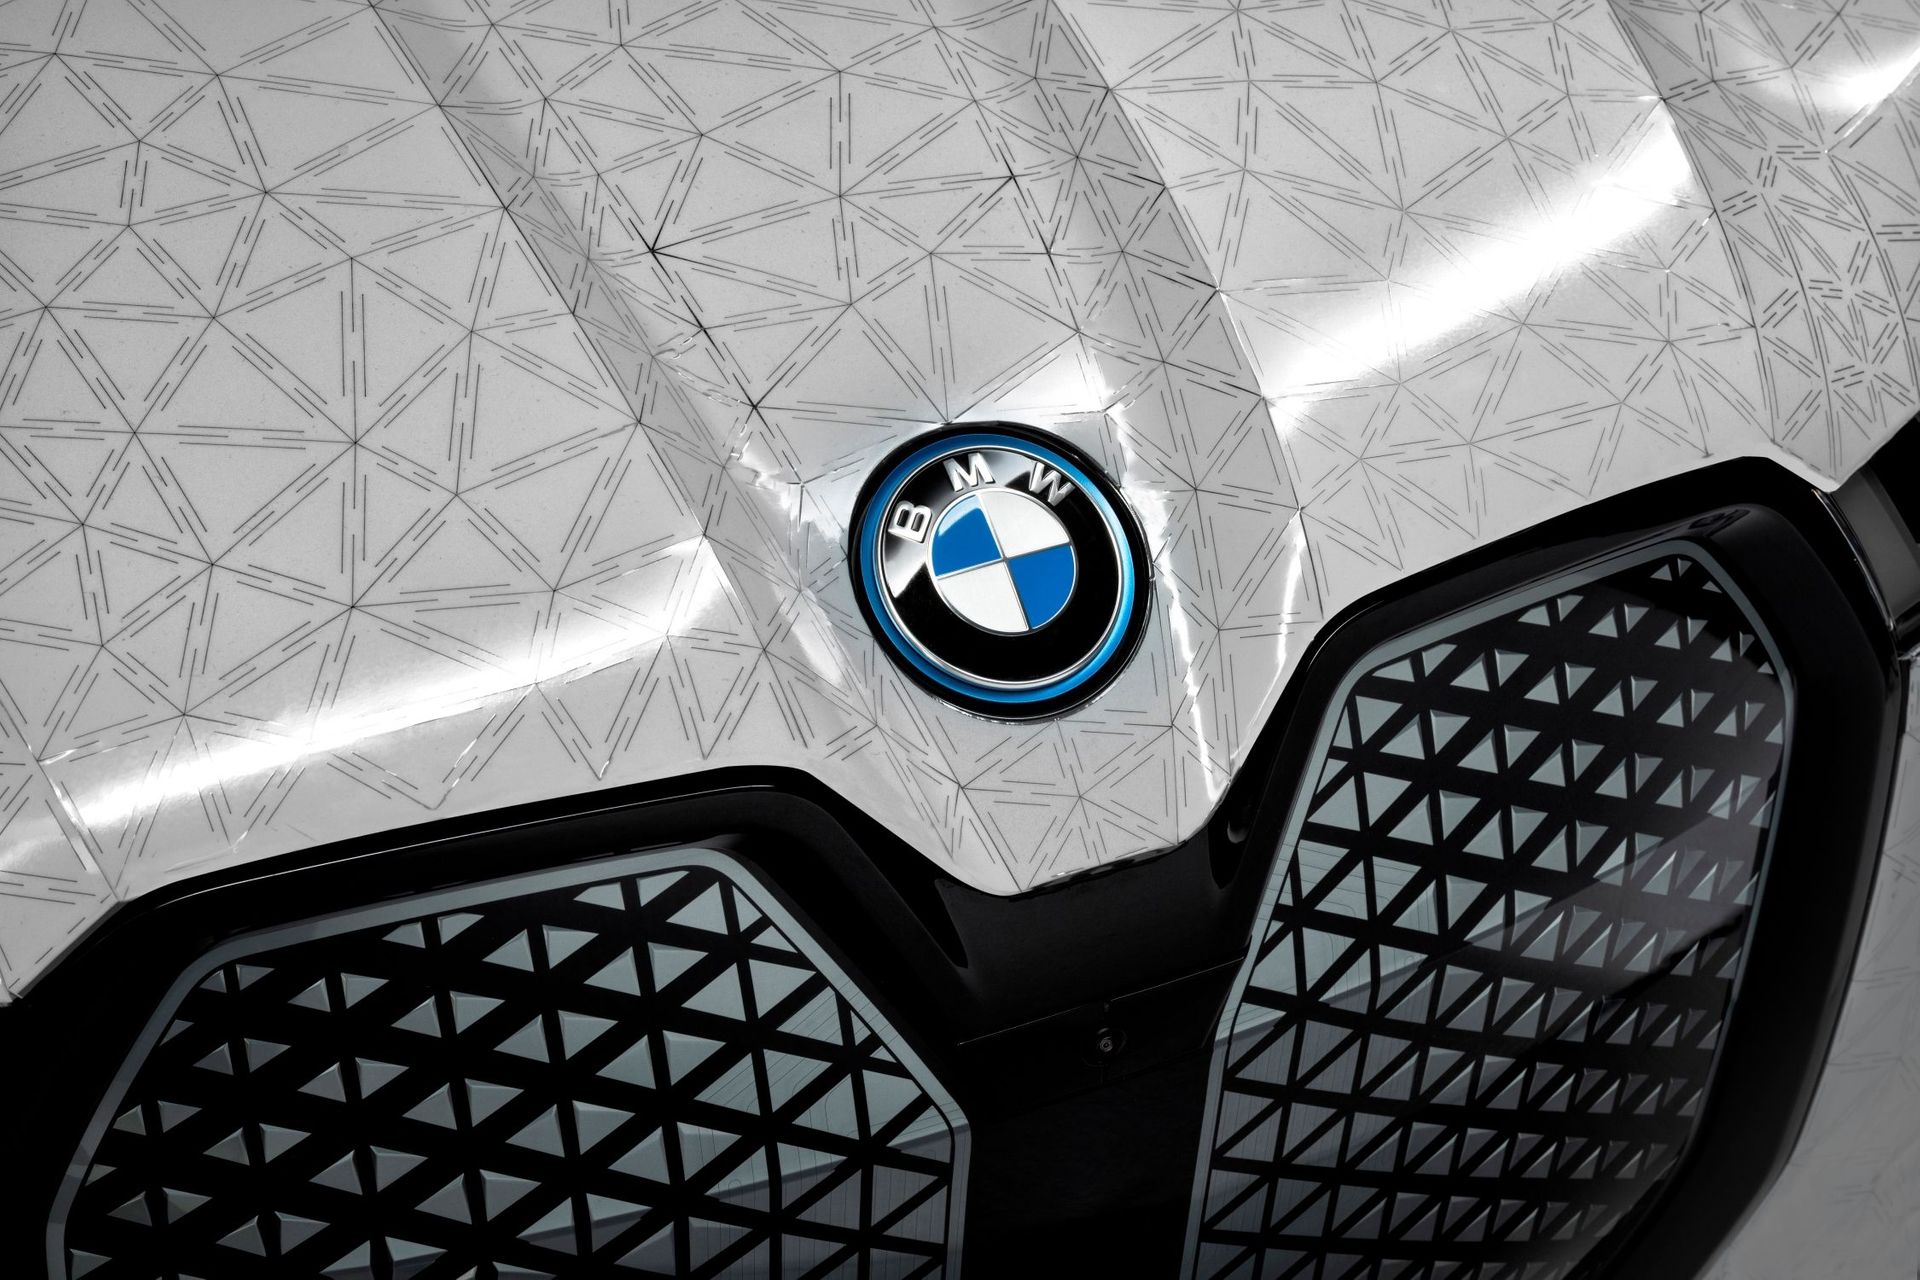 Деталь носовой части ультрароскошного iX Flow: по запросу электрического импульса электрофоретическая технология, созданная BMW в сотрудничестве с E Ink, выводит на поверхность различные цветовые пигменты, придавая кузову желаемый цвет